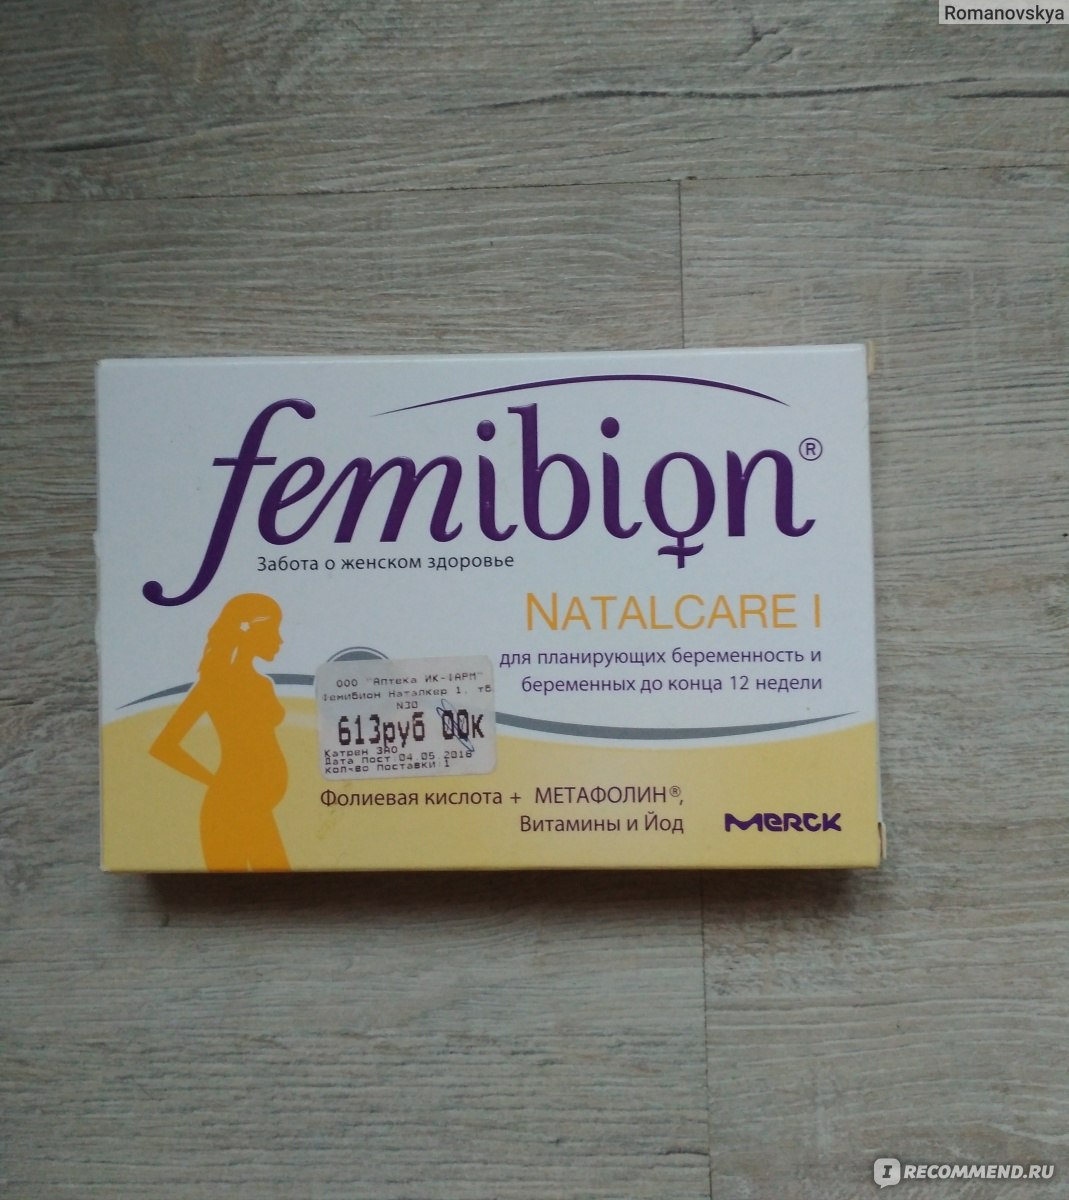 Вопросы перед беременностью мужу. Фемибион Наталкер 1. Фемибион витамины для планирования беременности. Витамины фемибион для планирования зачатия. Таблетки для беременности Femibion.